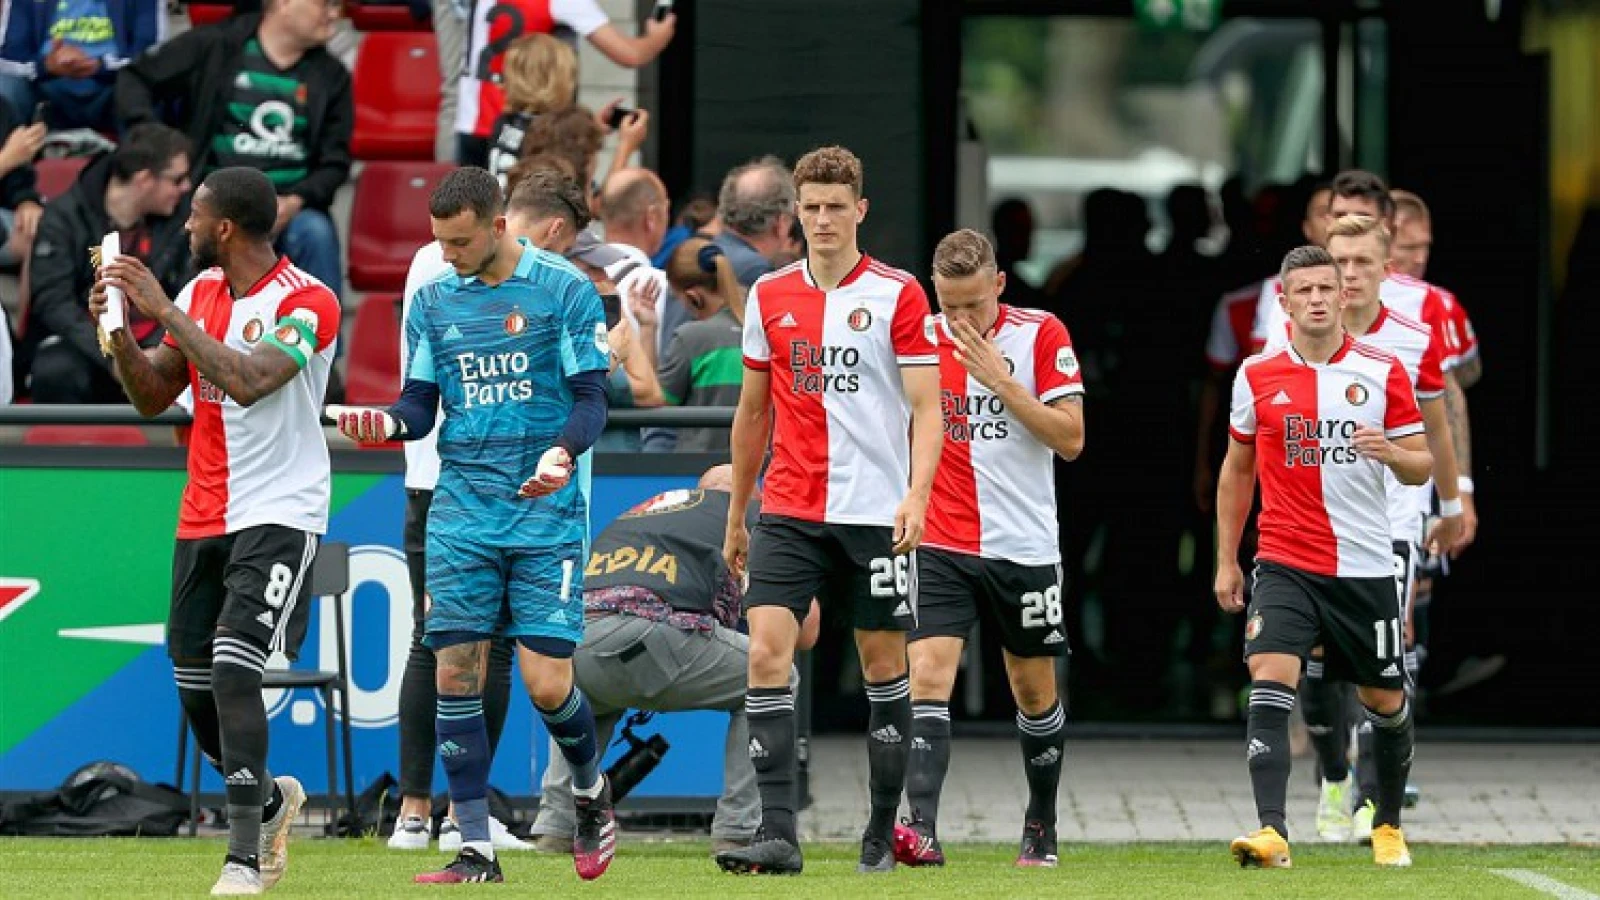 OPSTELLING | Feyenoord tegen BSC Young Boys met eerste basisplaats voor Boženík